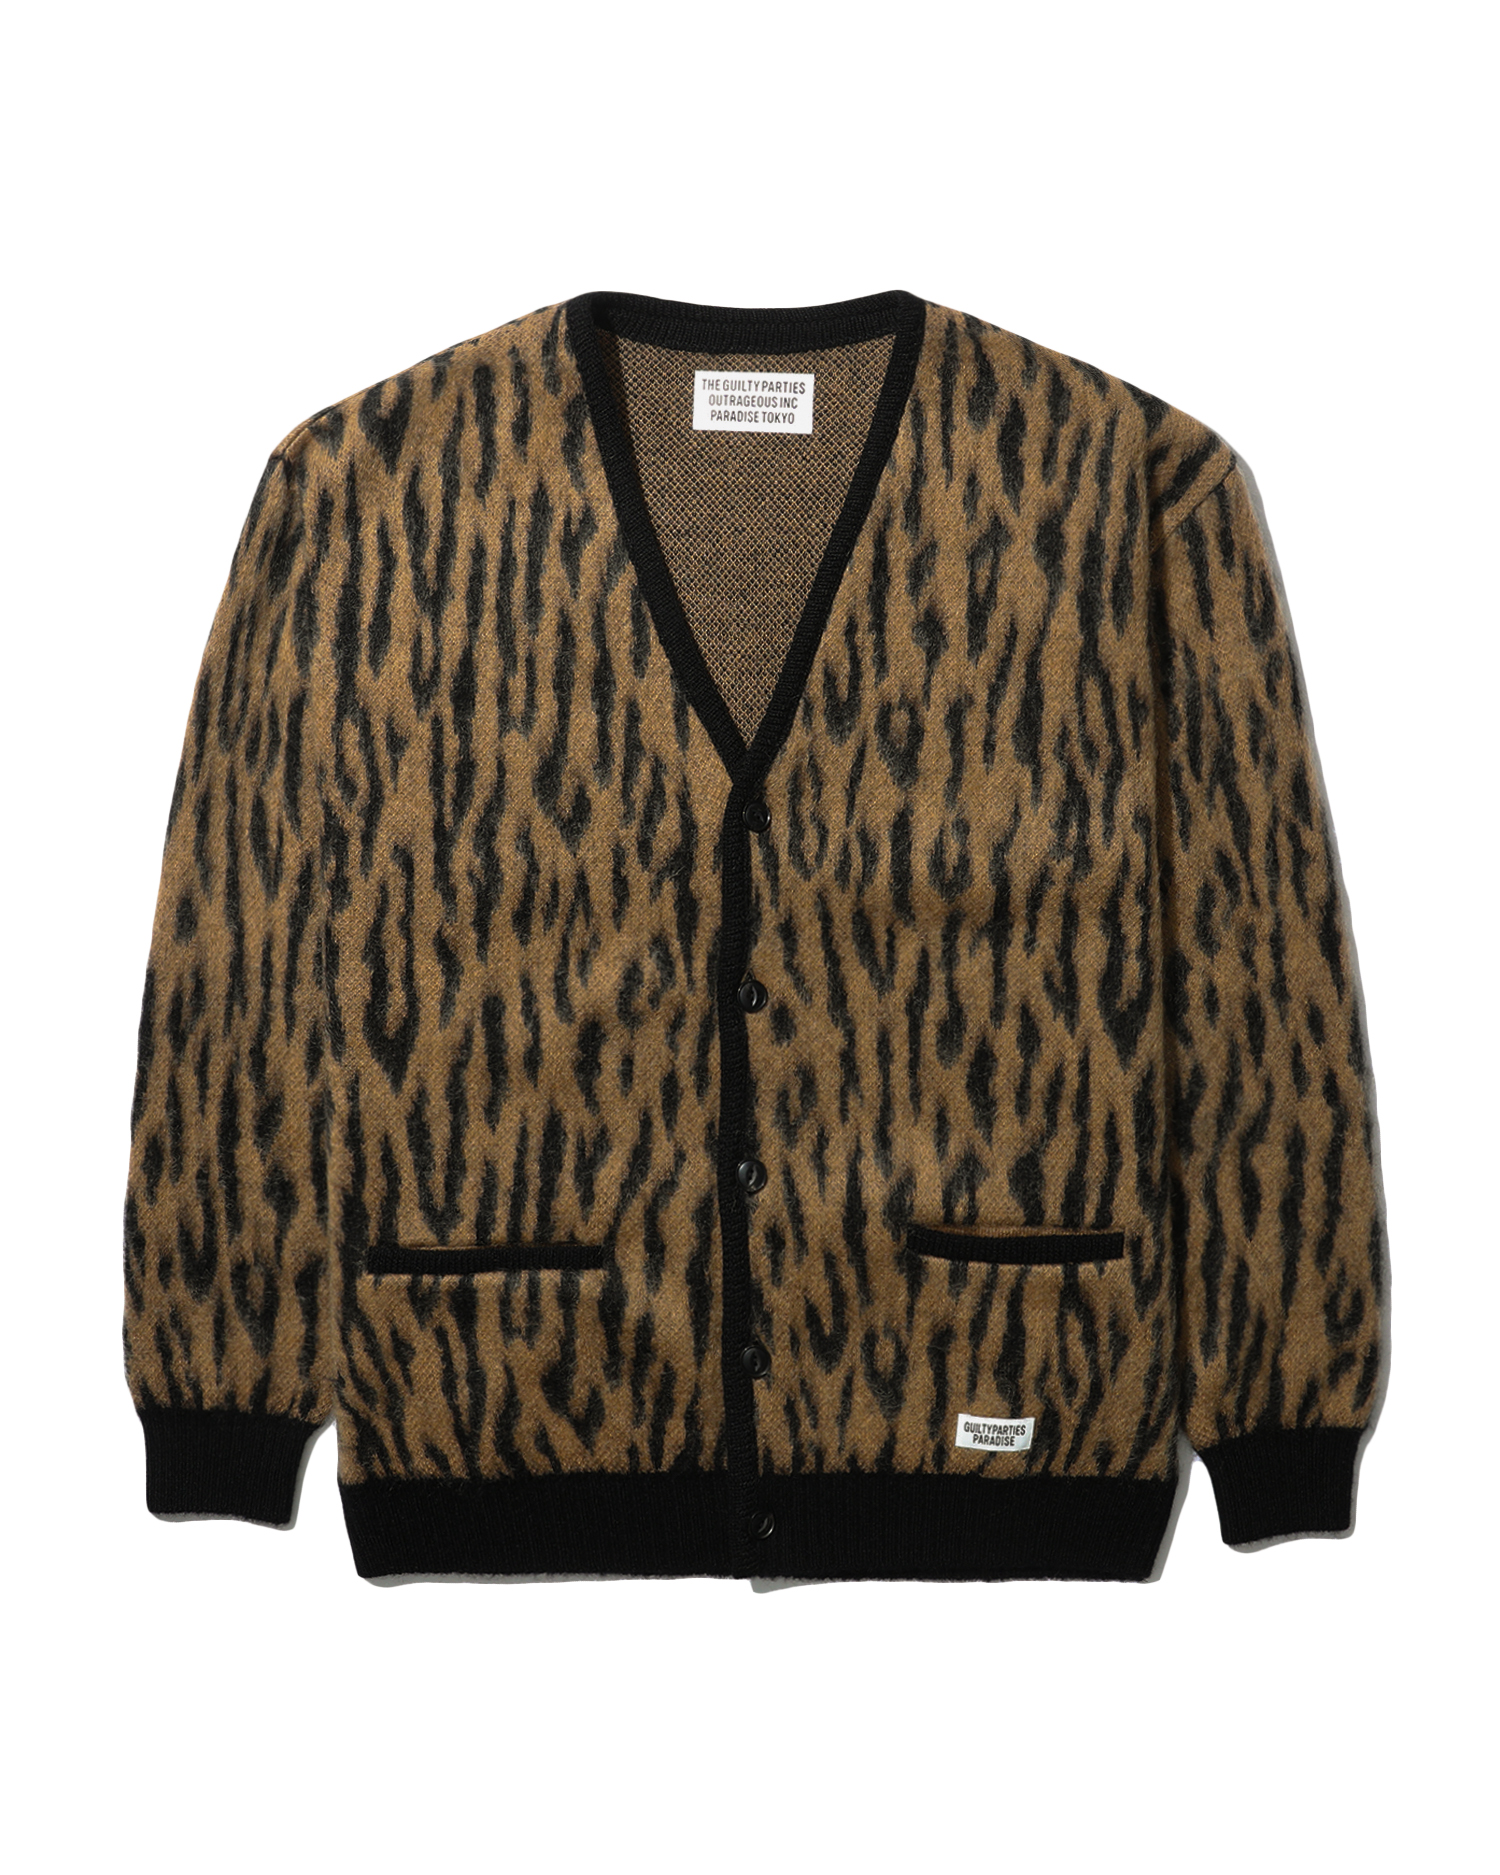 WACKO MARIA Leopard mohair cardigan| ITeSHOP